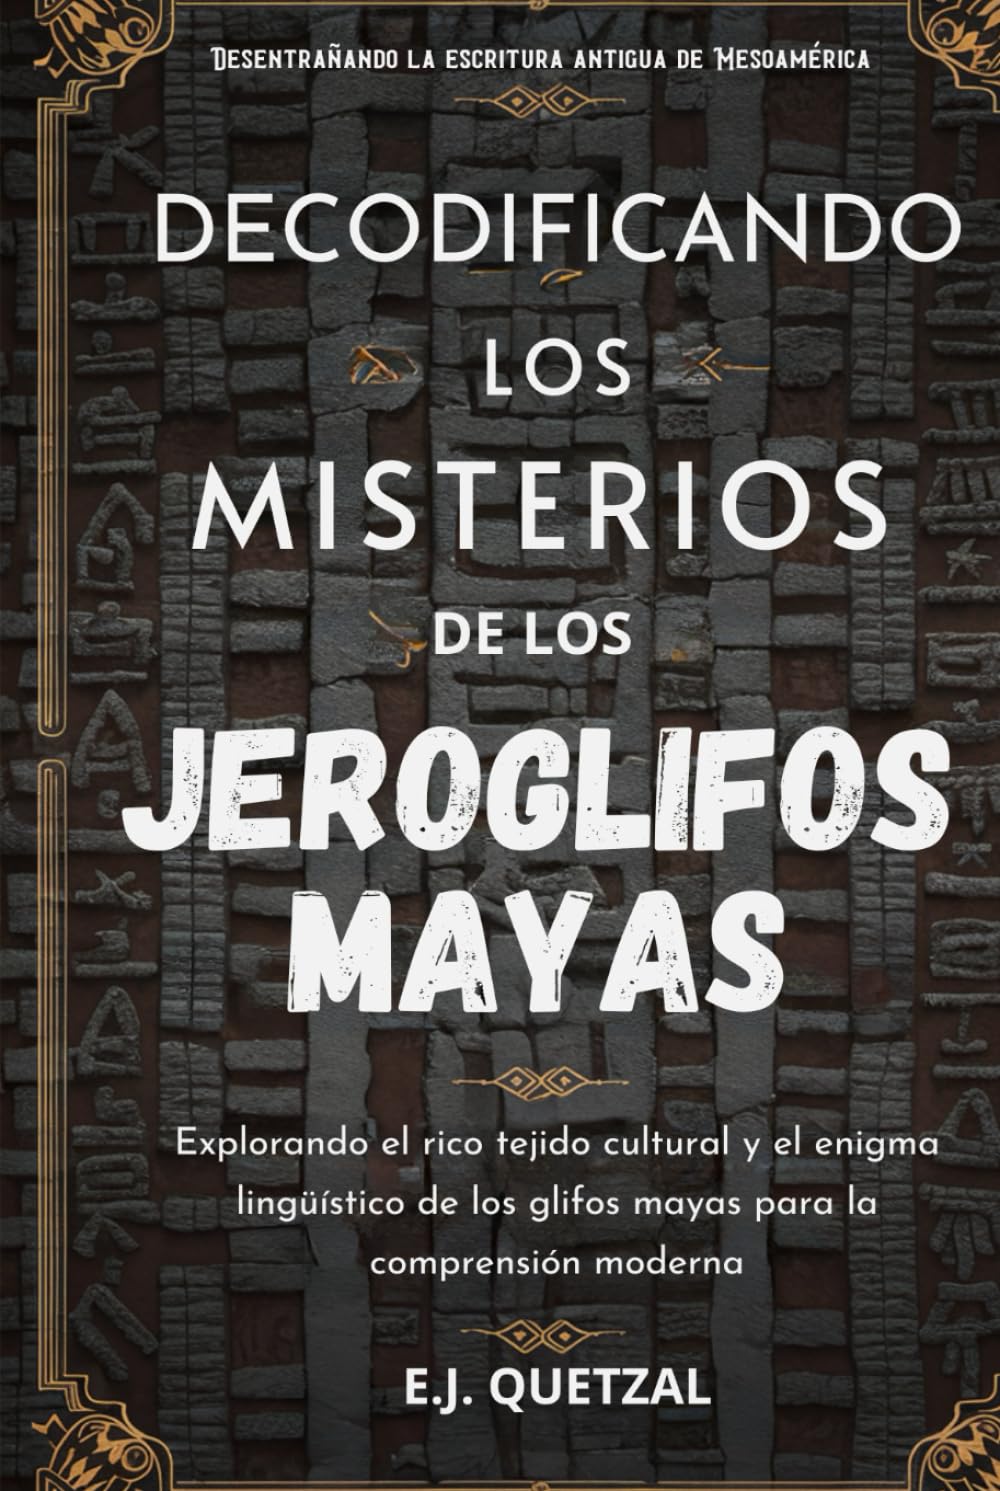 DECODIFICANDO LOS MISTERIOS DE LOS JEROGLIFOS MAYAS(Desentrañando la escritura antigua de Mesoamérica): Explorando el rico tejido cultural y el enigma lingüístico de los glifos mayas para la comprens